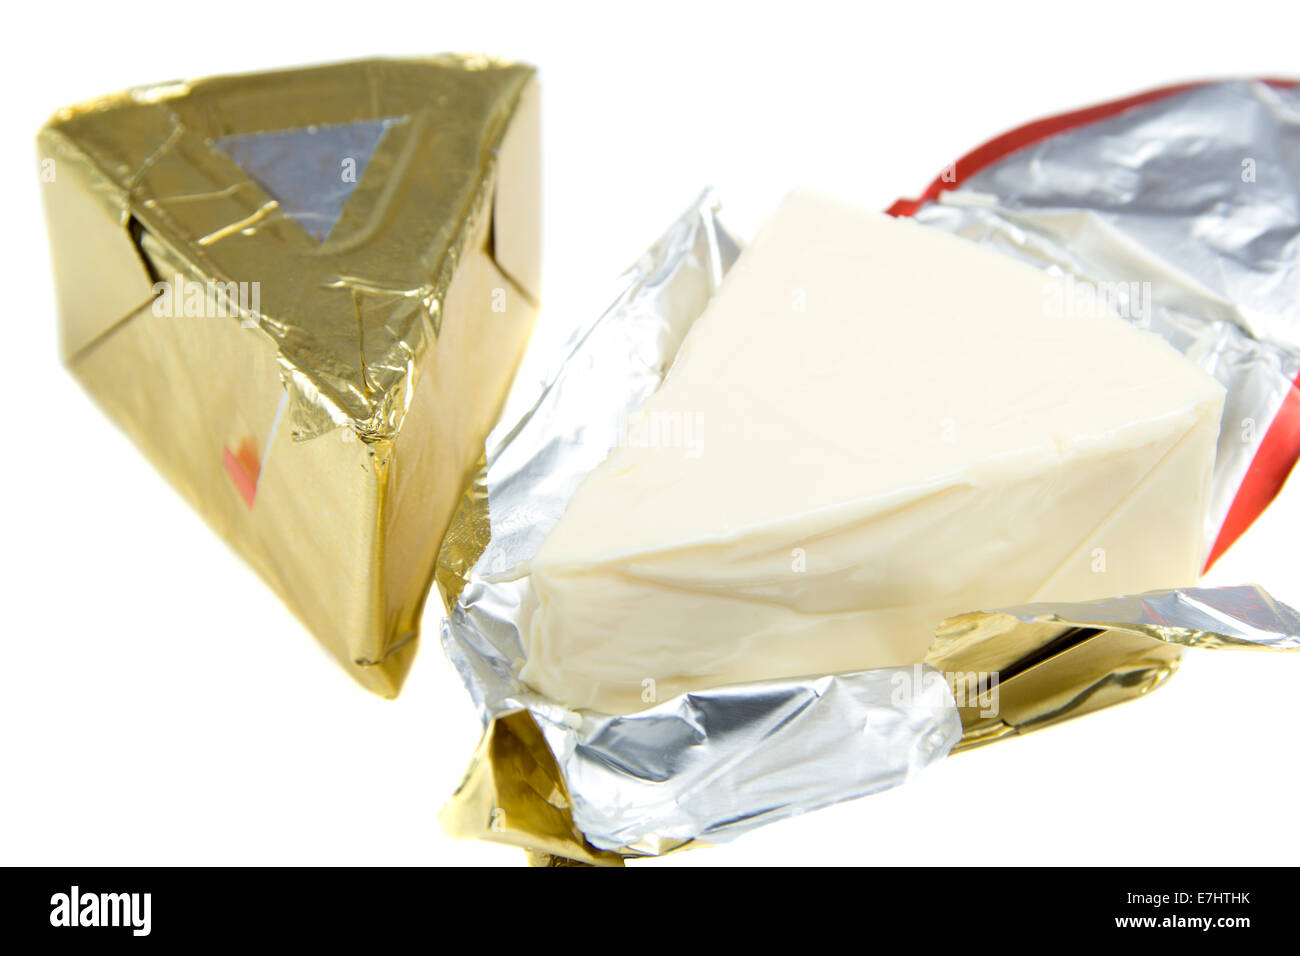 Morceau de fromage Triangle en aluminium doré sur fond blanc Banque D'Images